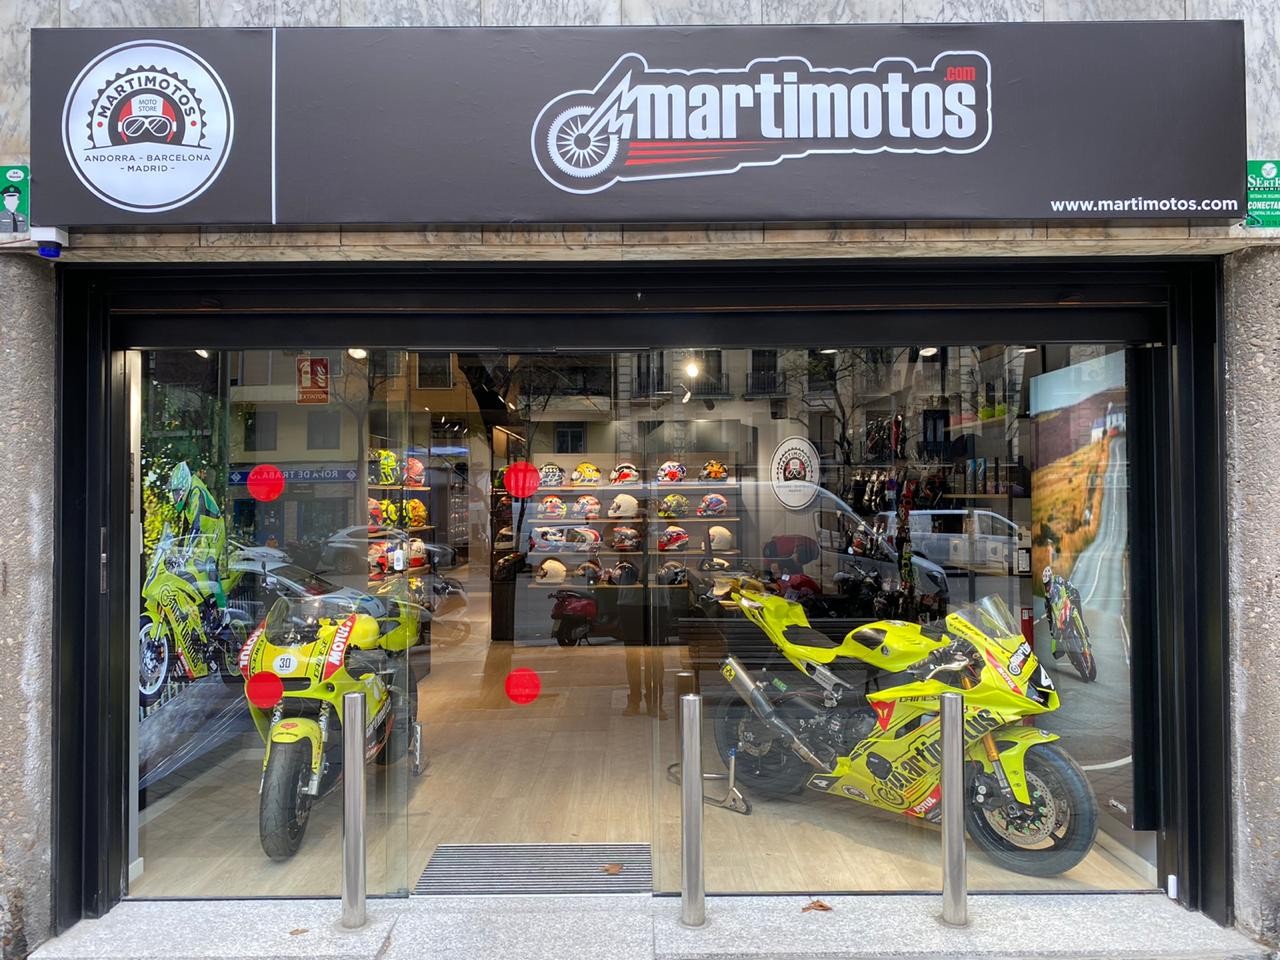 Transporte Adversario Salida Tienda de ropa de moto, cascos y accesorios moto - Martimotos